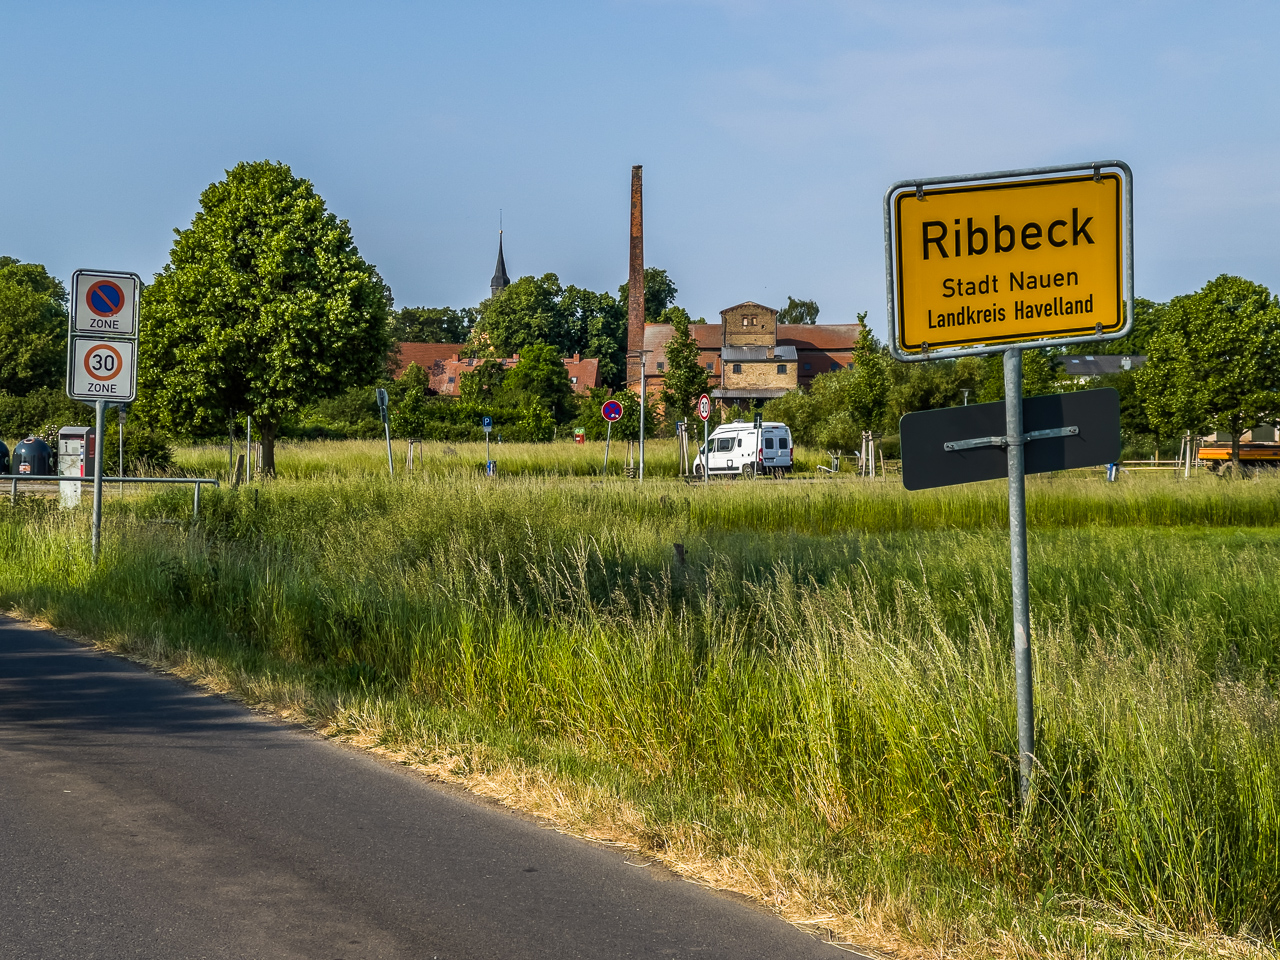 Ansicht eines kleinen, offensichtlich älteren Dorfs im Grünen, vorn OrtsEingangsSchild "Ribbeck Stadt Nauen Landkreis Havelland"